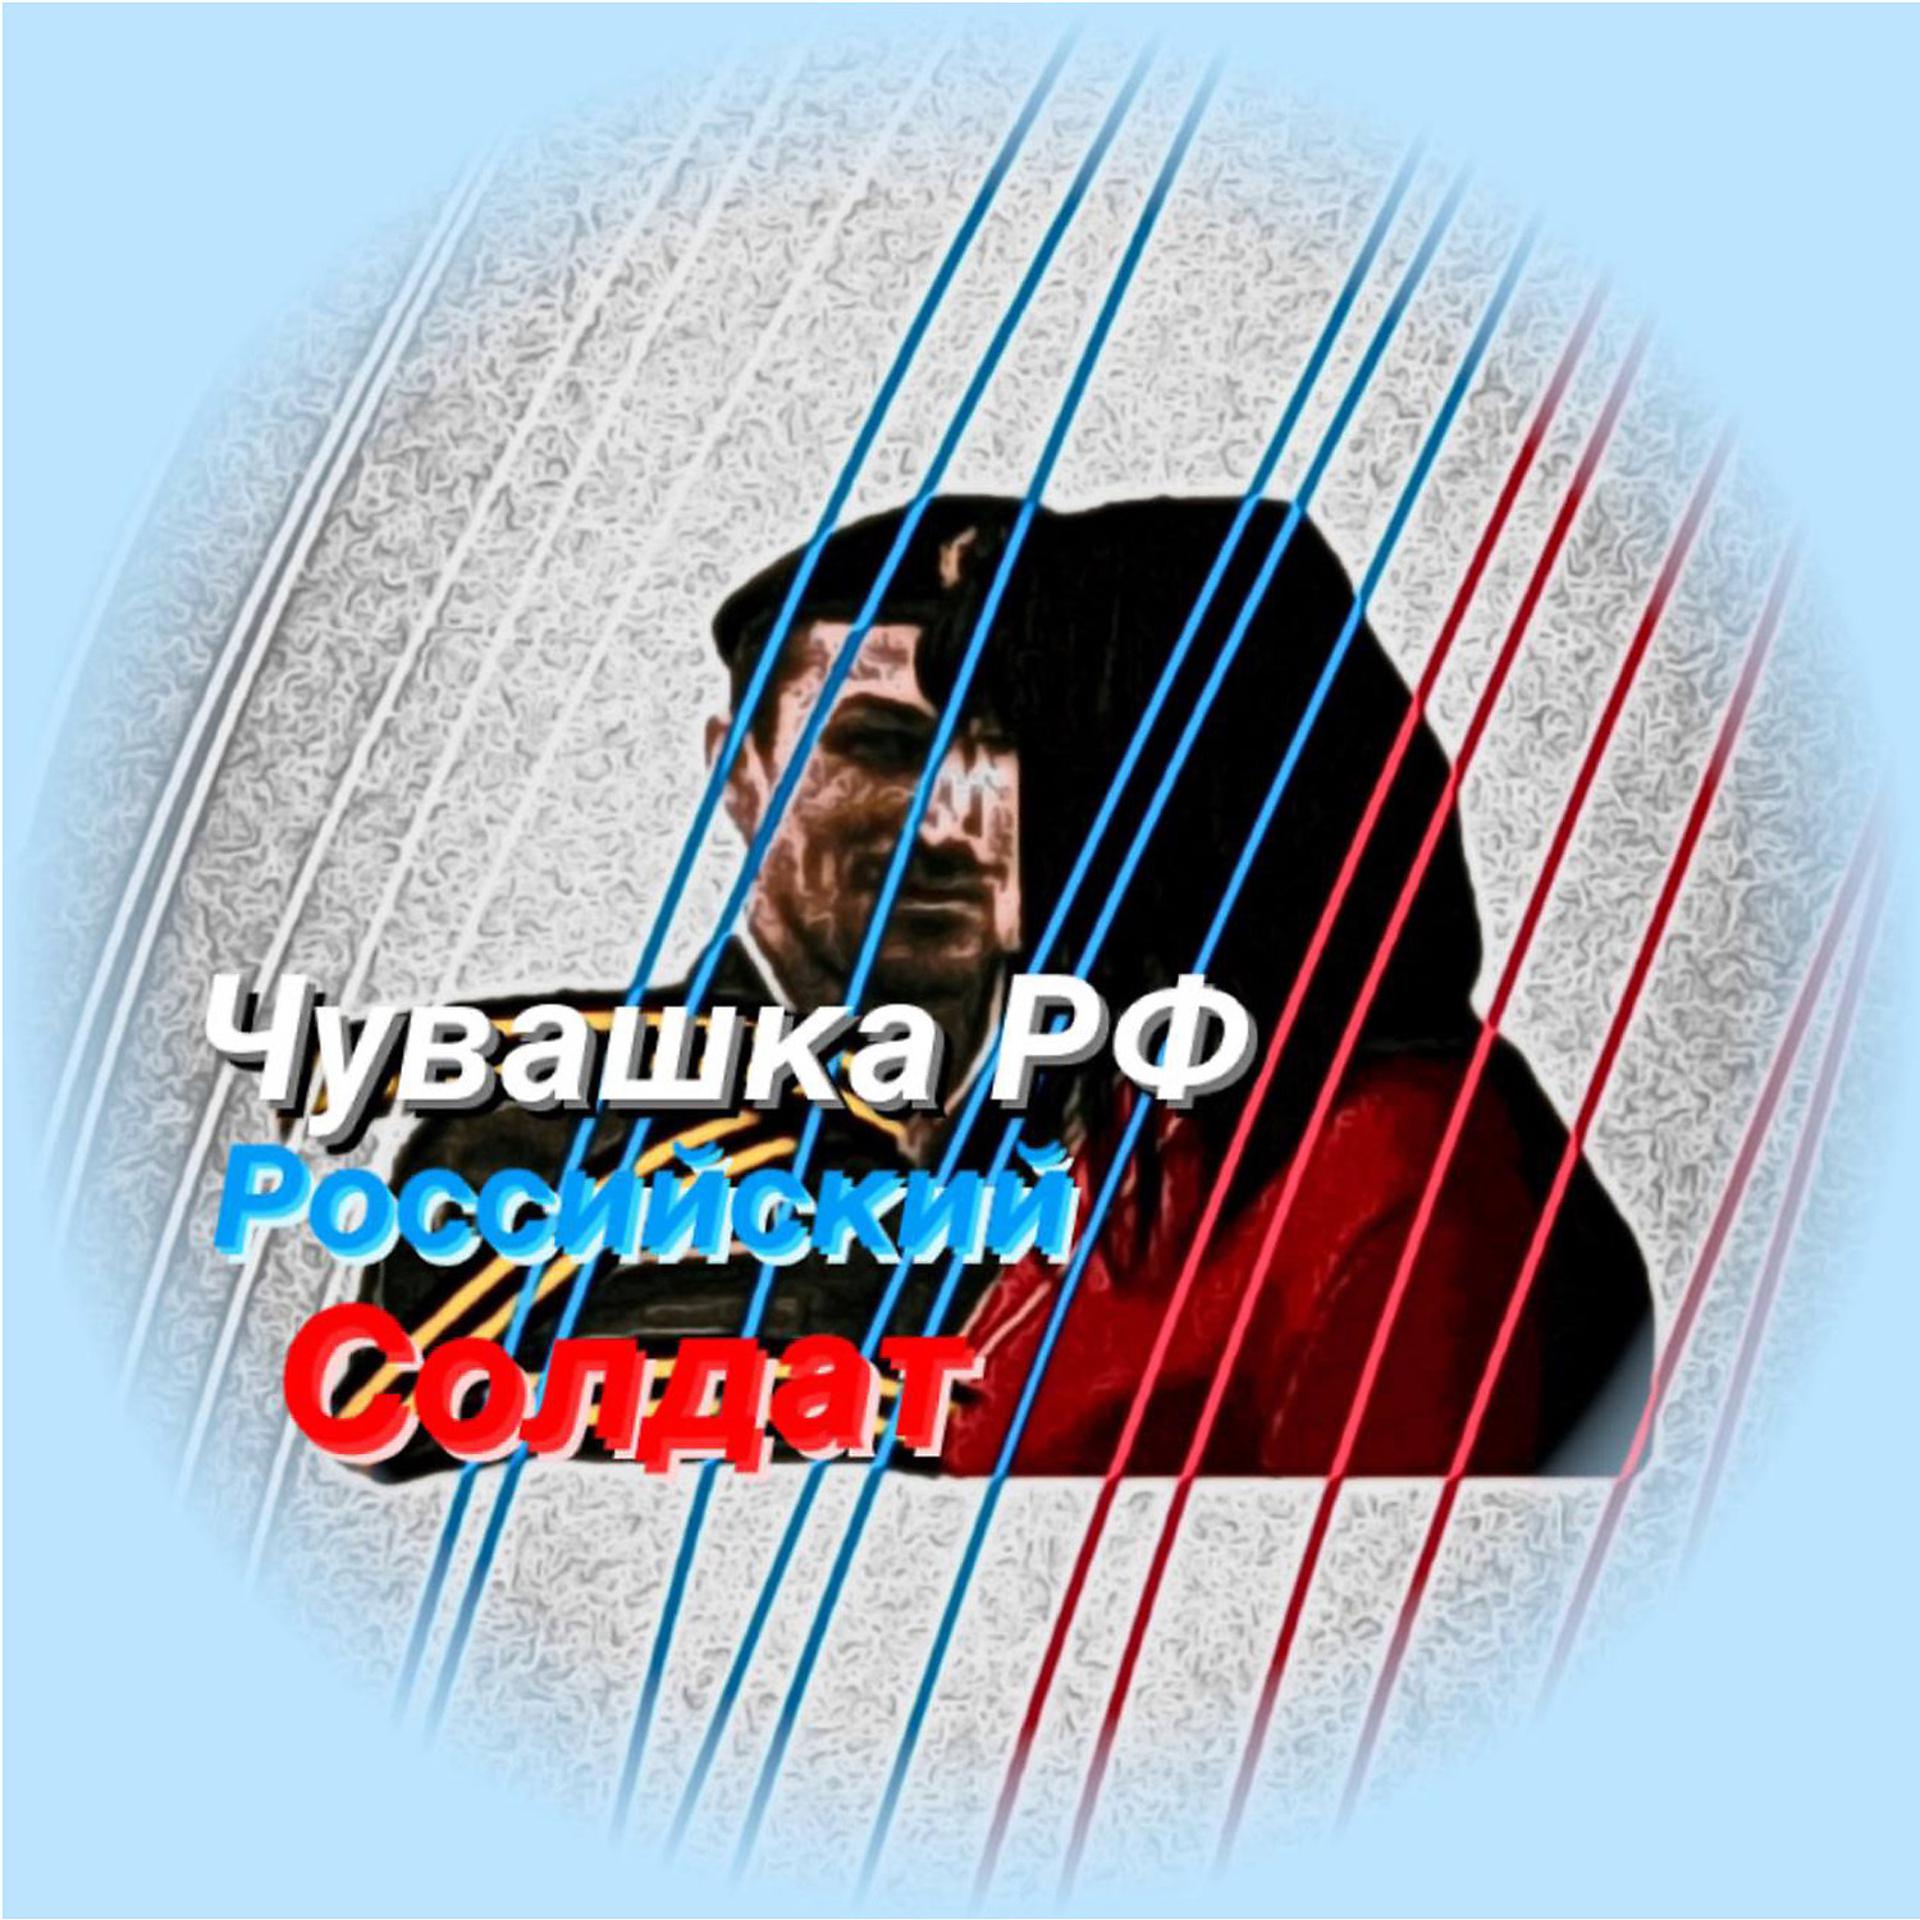 Постер альбома Российский солдат